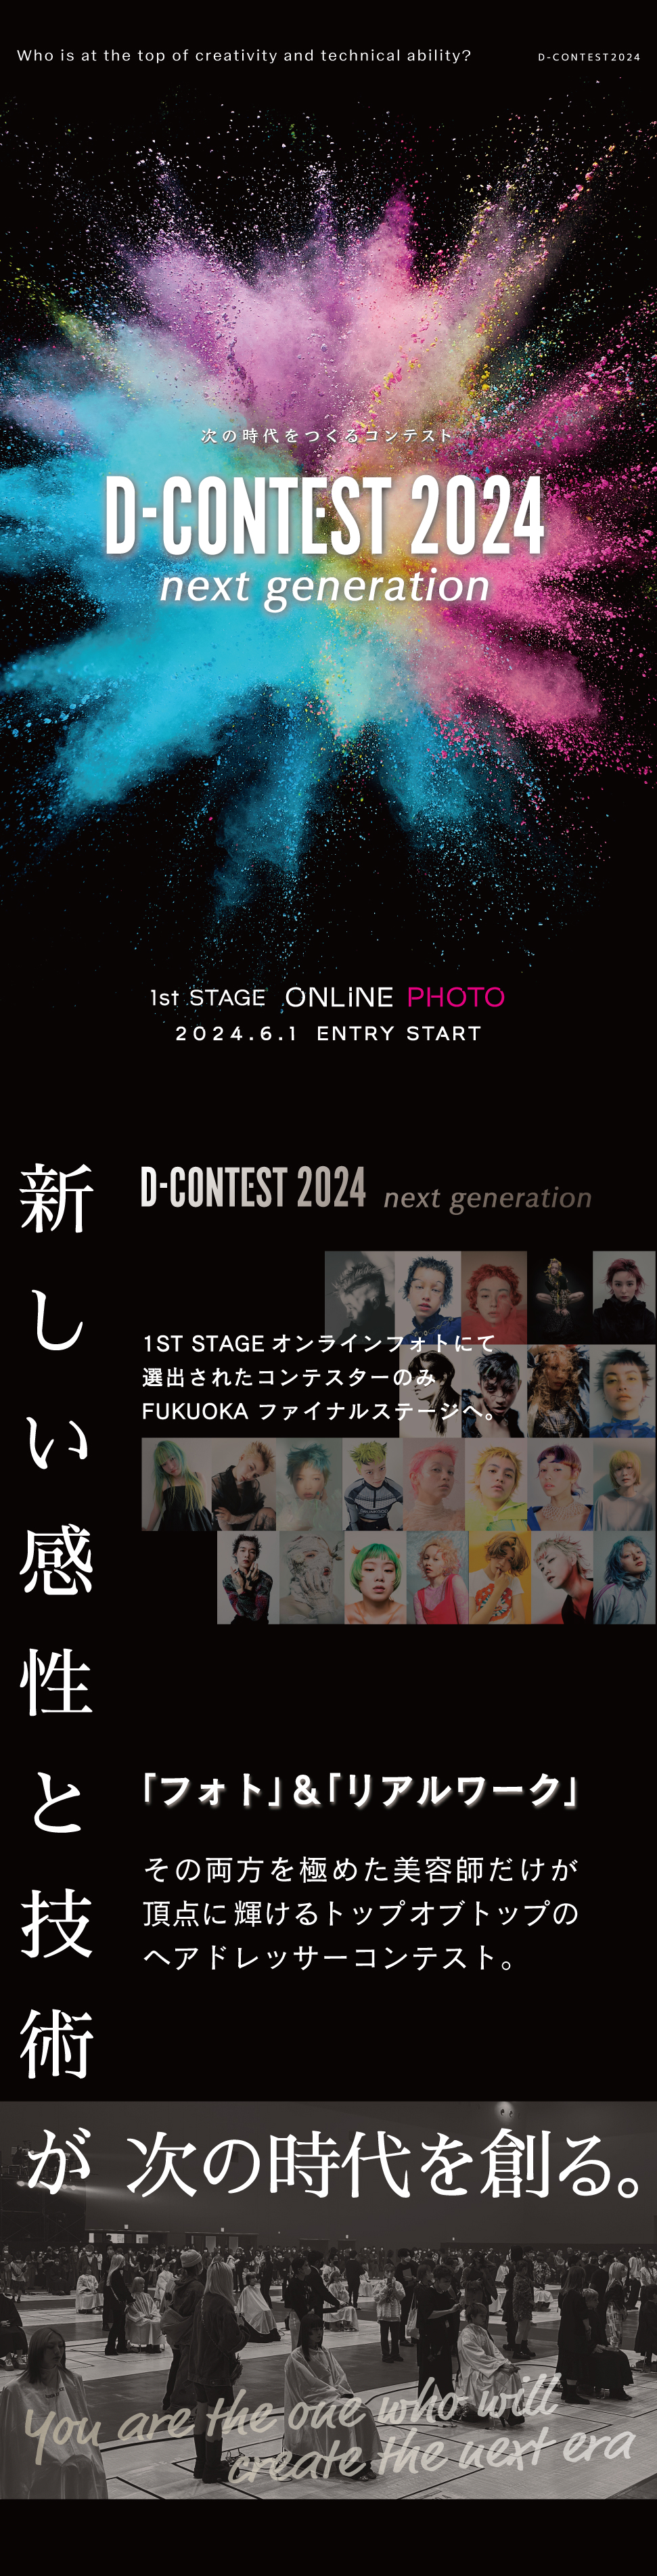 「新しい感性と技術が次の時代をつくっていく」Dコンテスト2024は次の時代をつくる美容師日本一を決めるコンテスト。1st STAGEではオンラインフォト予選を開催。審査の結果選ばれたファイナリストが福岡で開催のファイナルステージに挑戦できます。